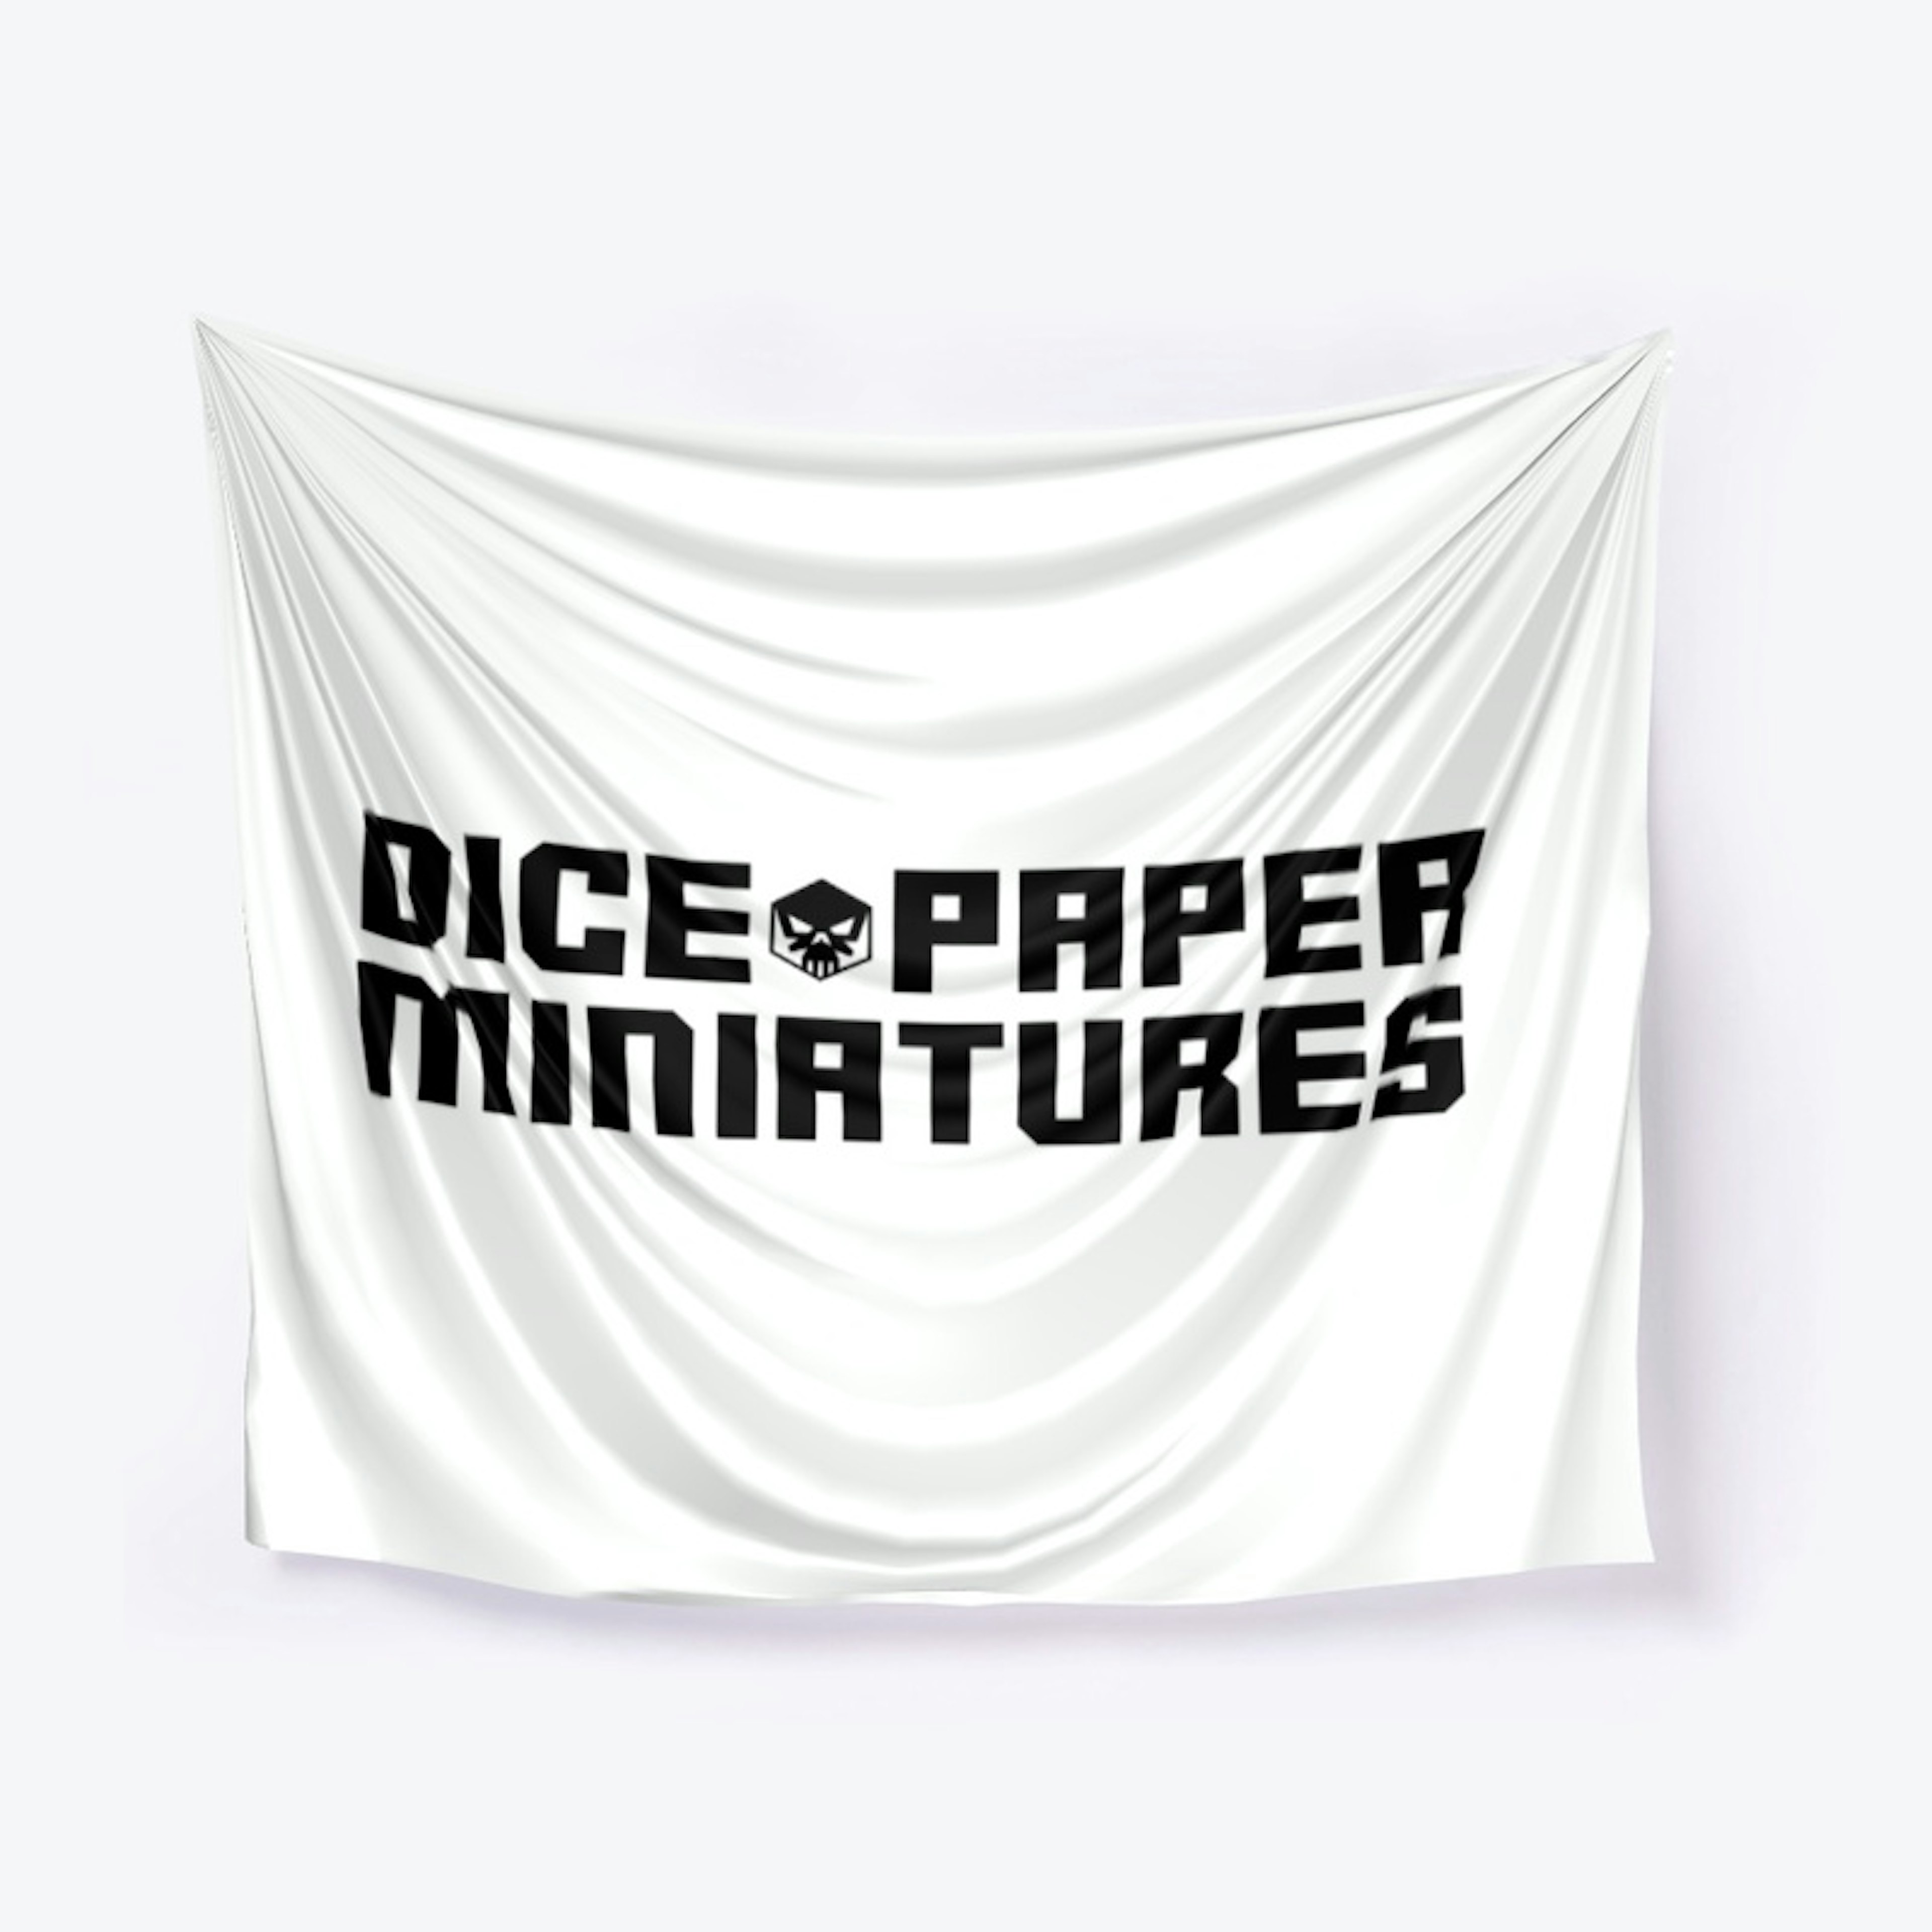 Dice Paper Miniatures - Full Logo